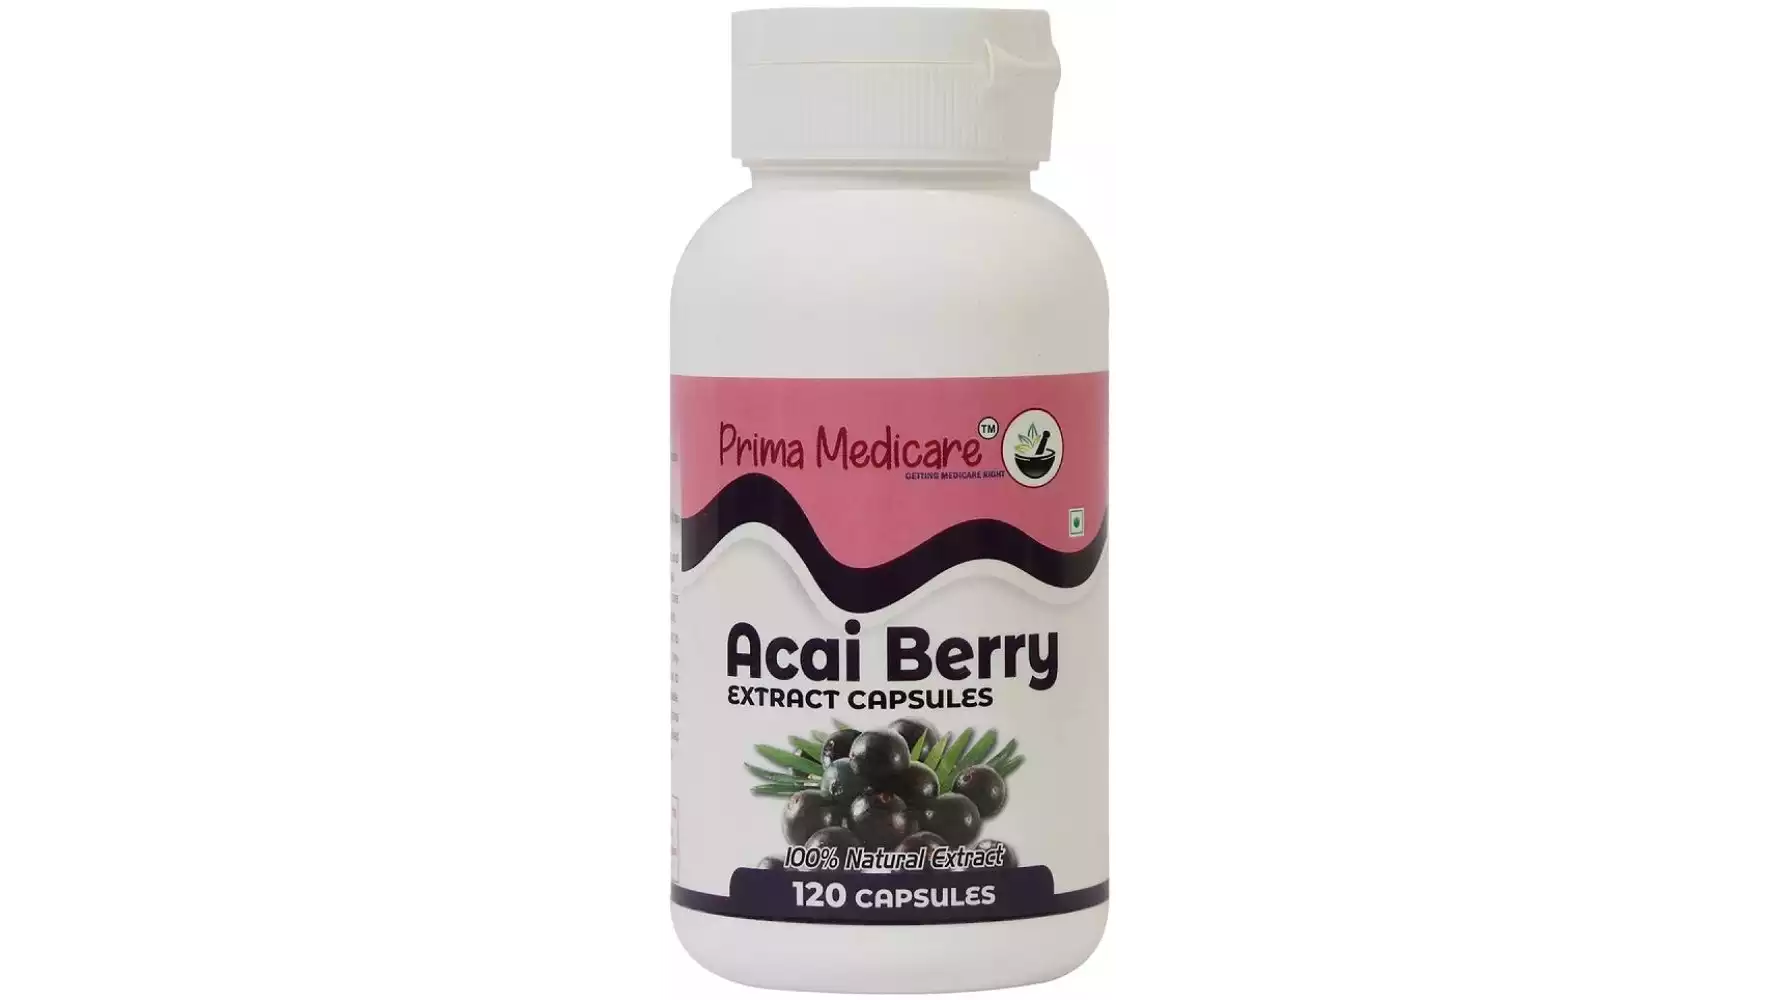 Prima Medicare Acai Berry Extract Capsules (120caps)